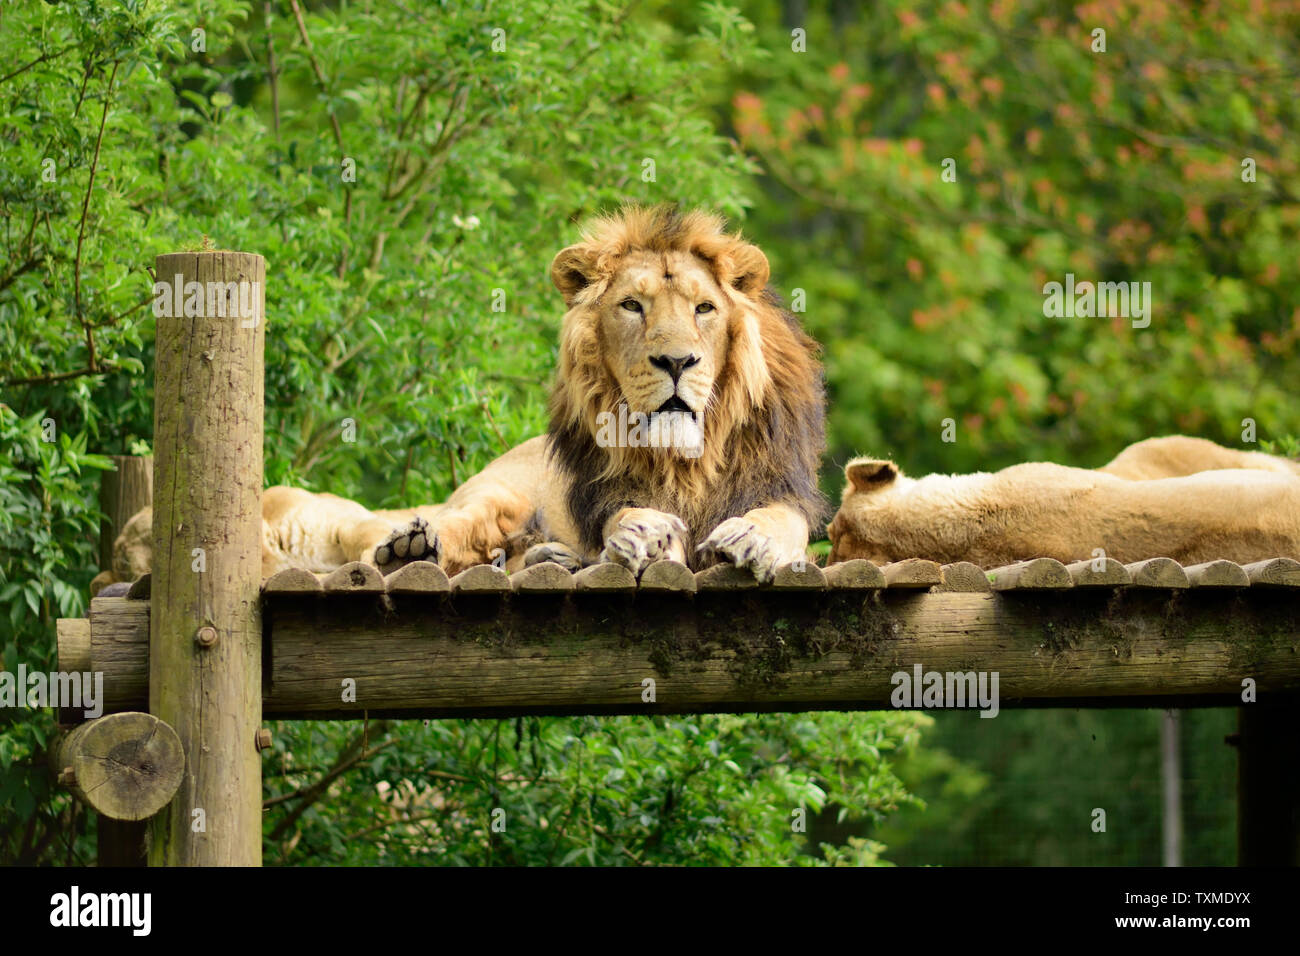 Un homme Lion asiatique flanquée de deux femelles. Banque D'Images